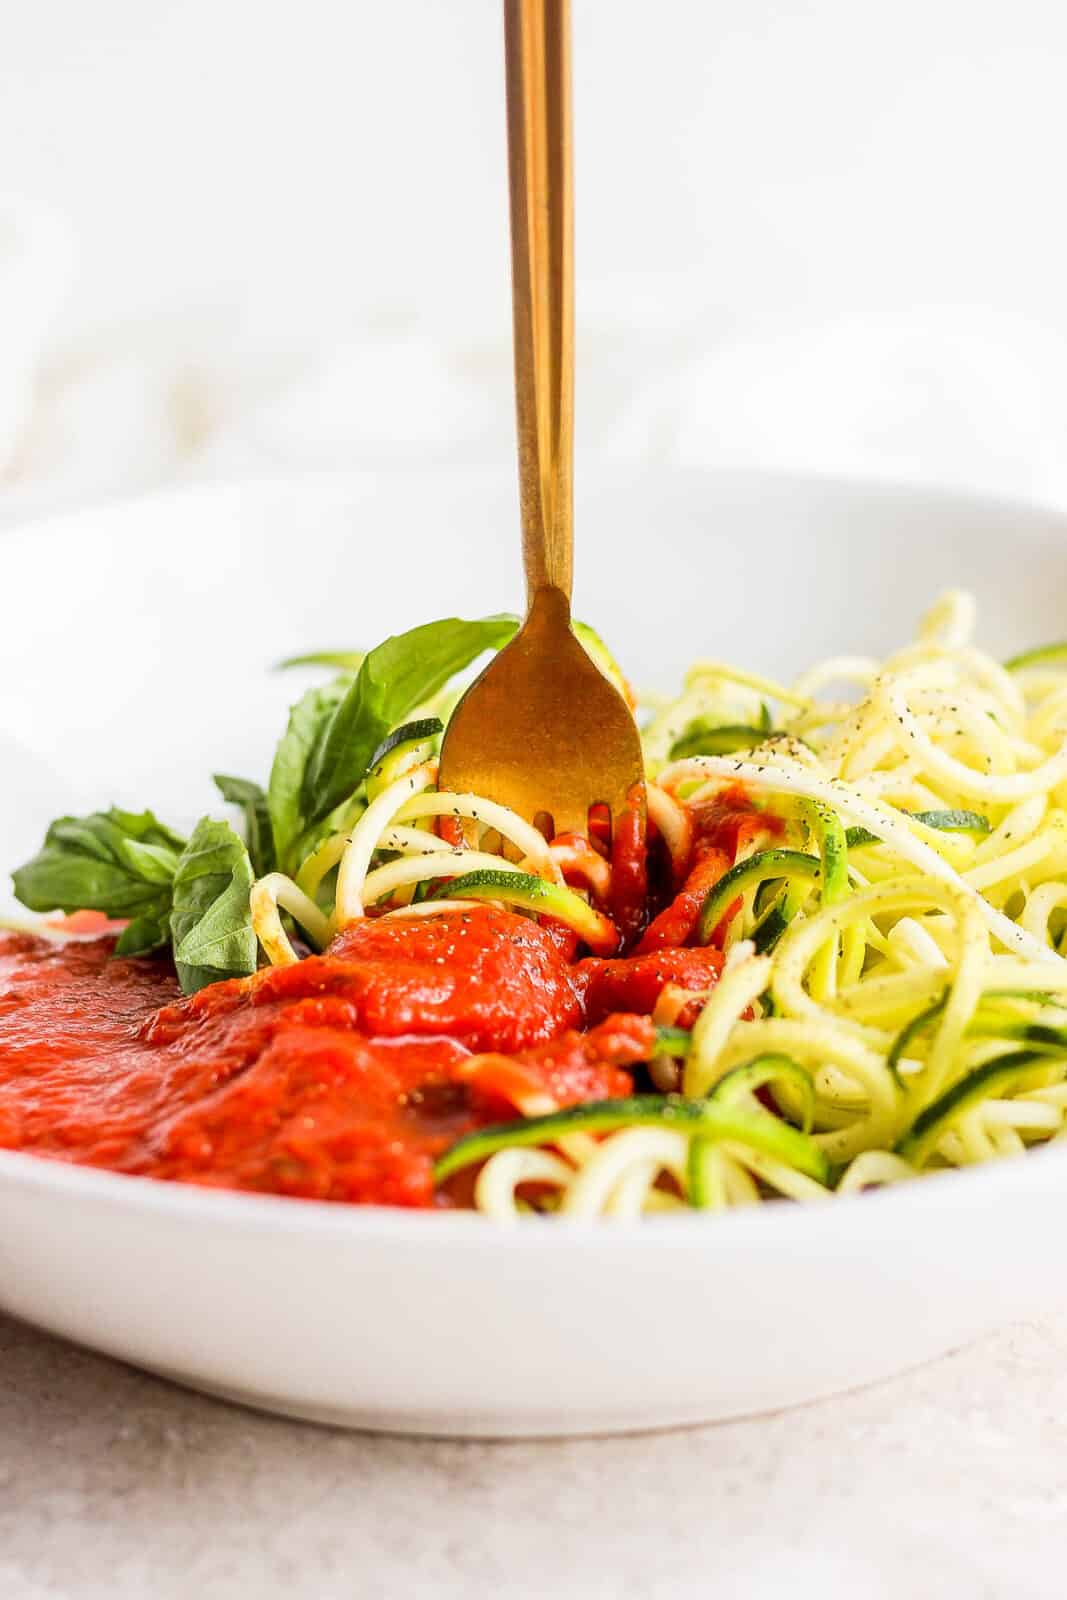 A fork in the zucchini spaghetti.